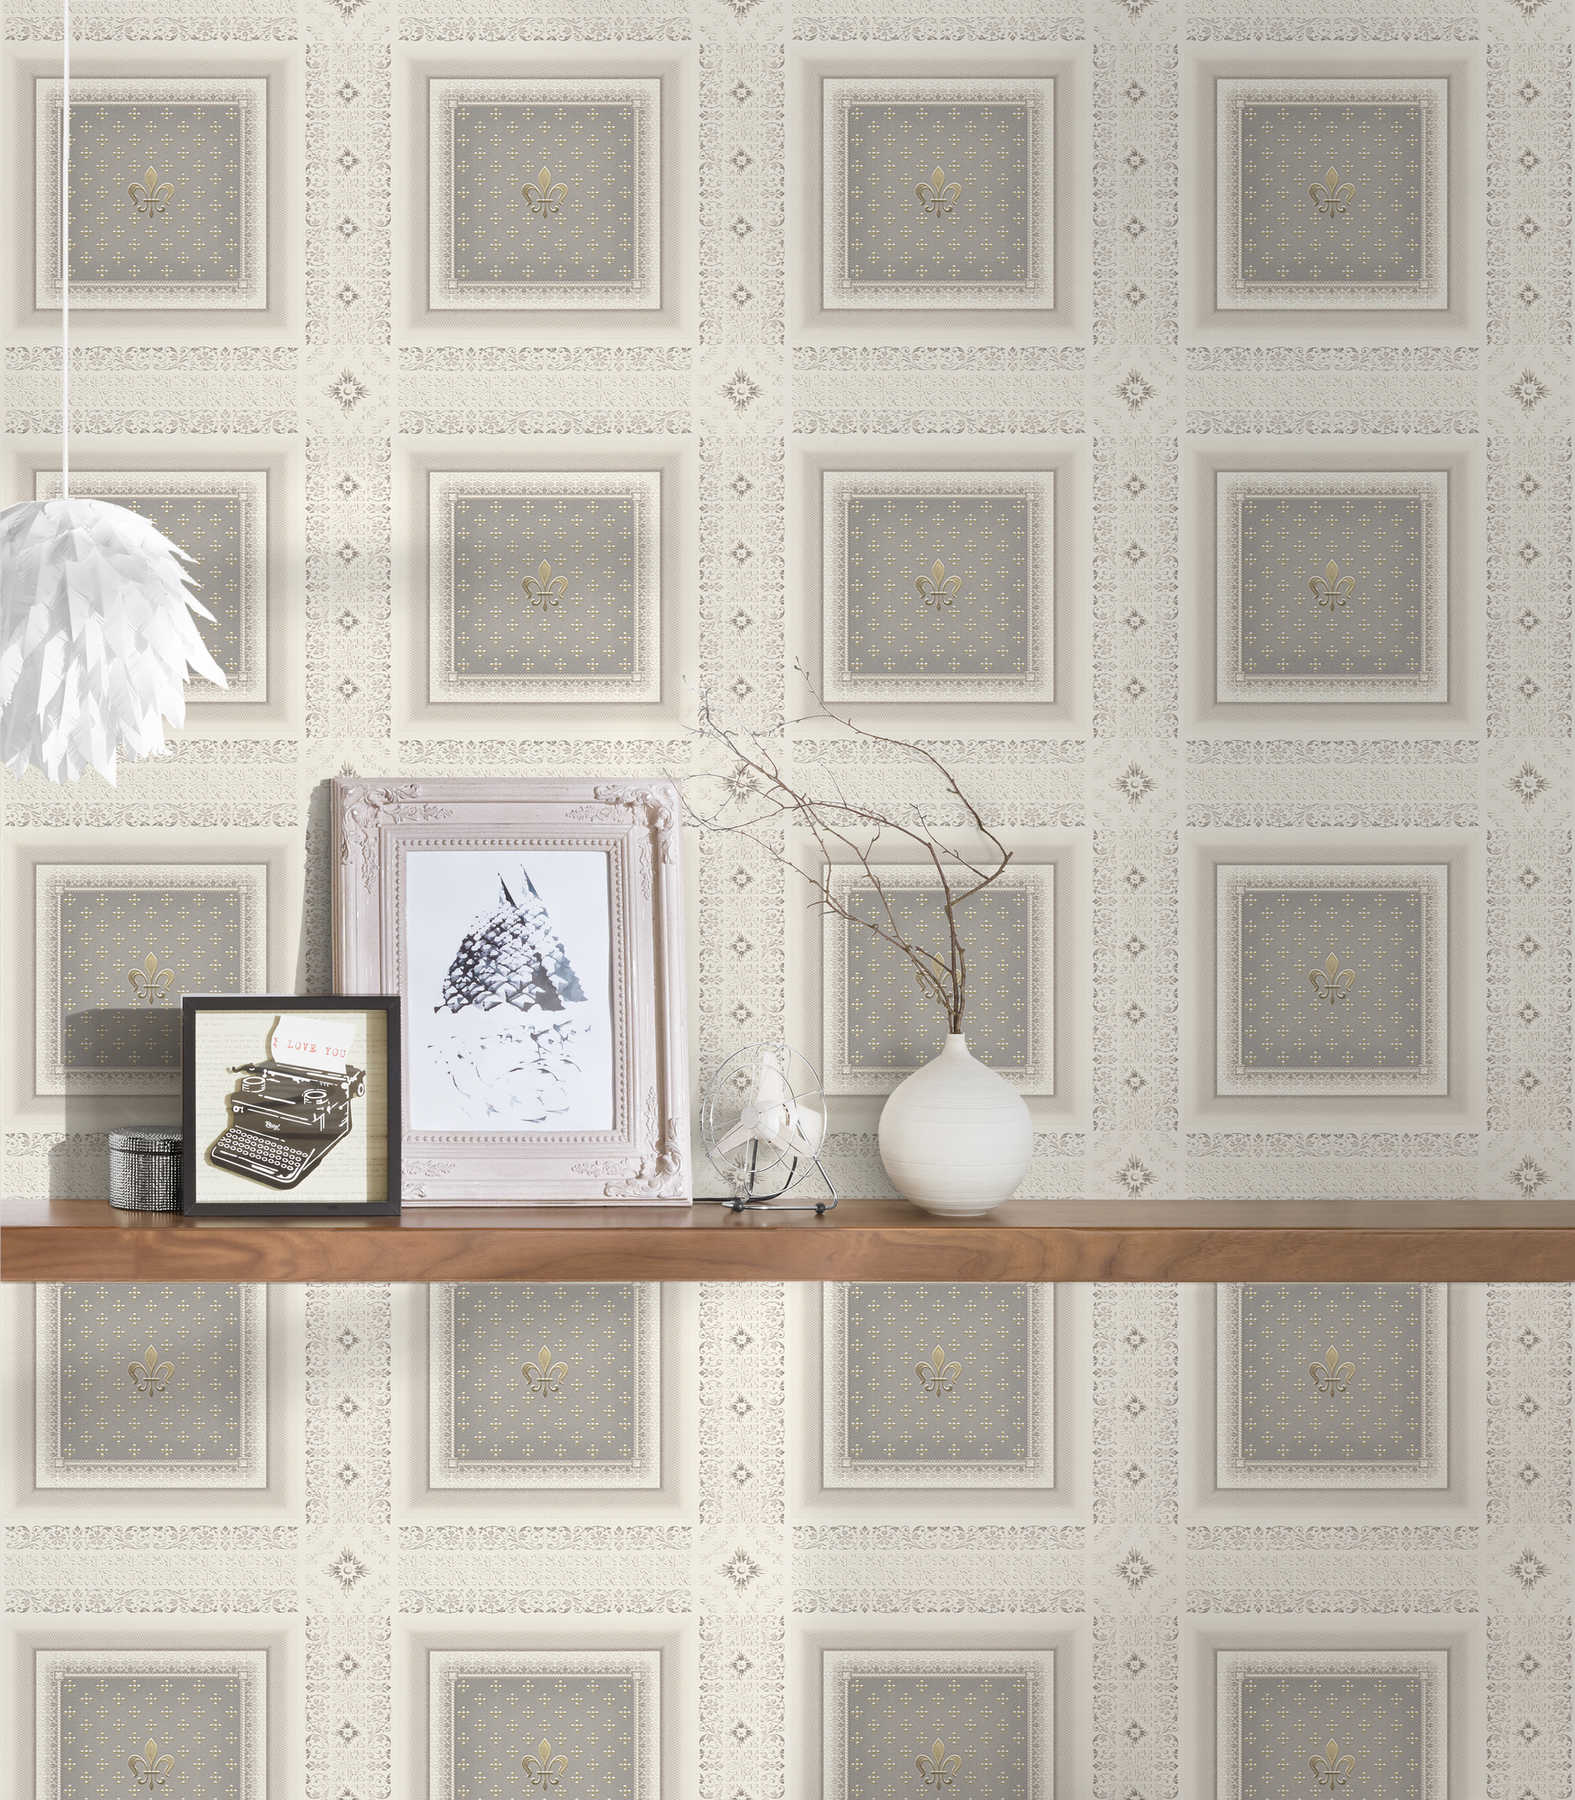             Fleur-de-lis wallpaper with silver design - cream
        